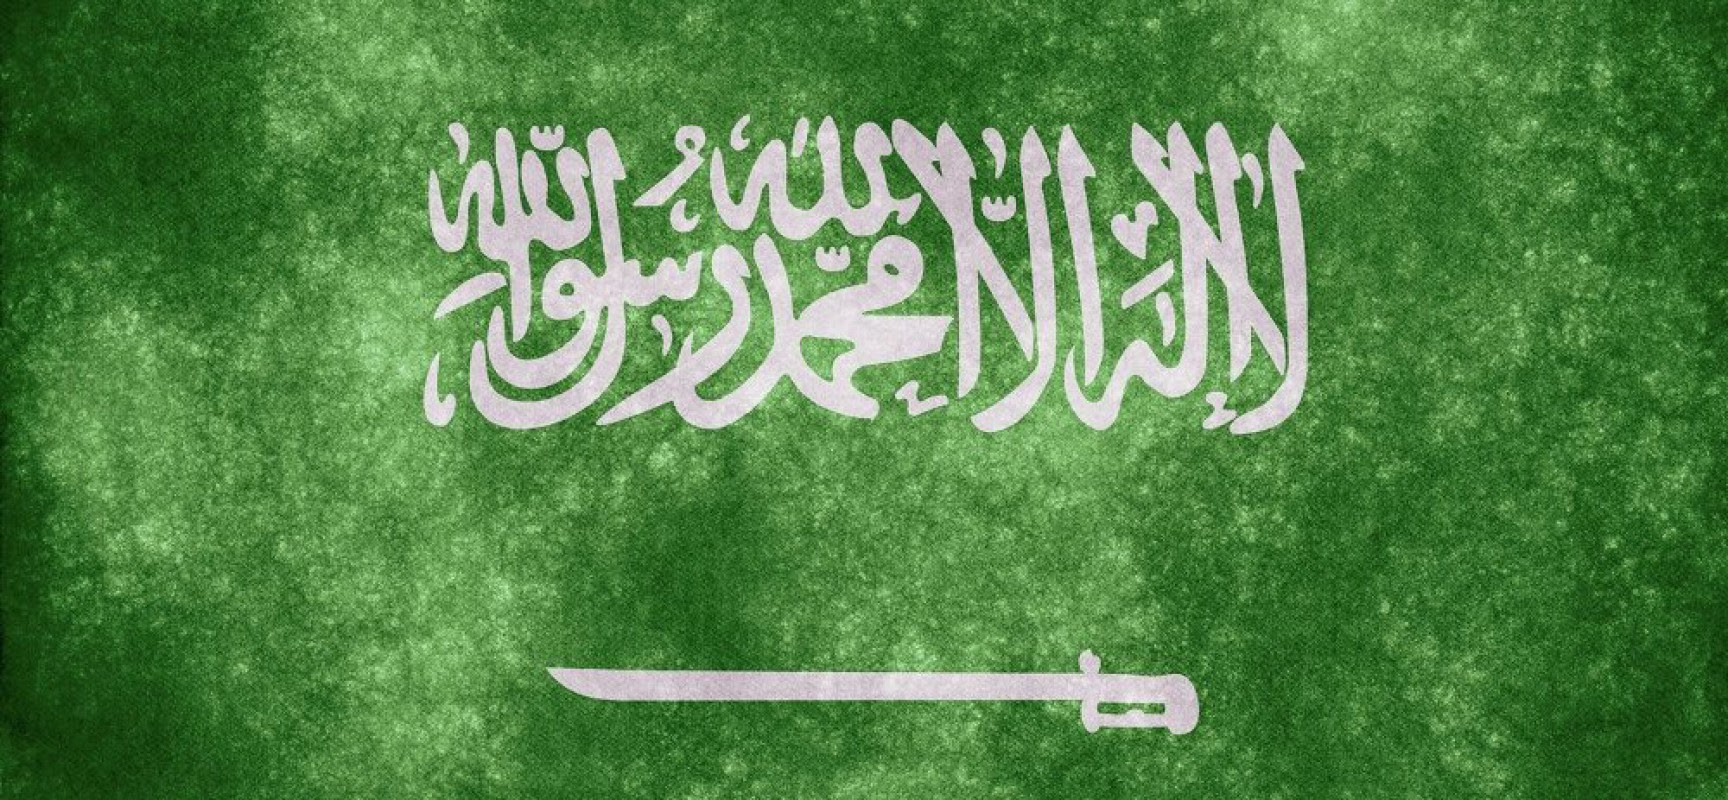 La Saoudie vue par les caricaturistes du monde